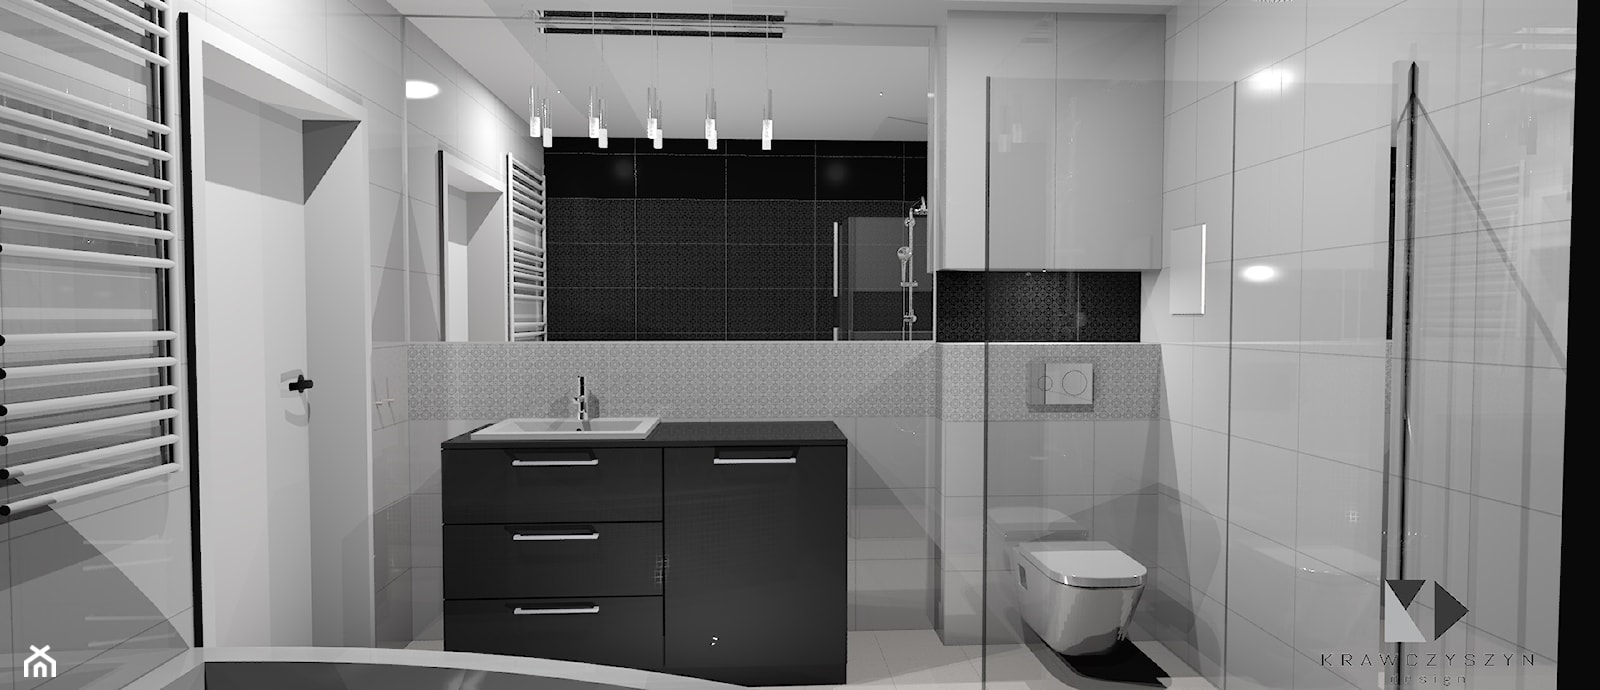 Nowoczesna łazienka Black&White - Łazienka, styl nowoczesny - zdjęcie od Krawczyszyn-design - Homebook